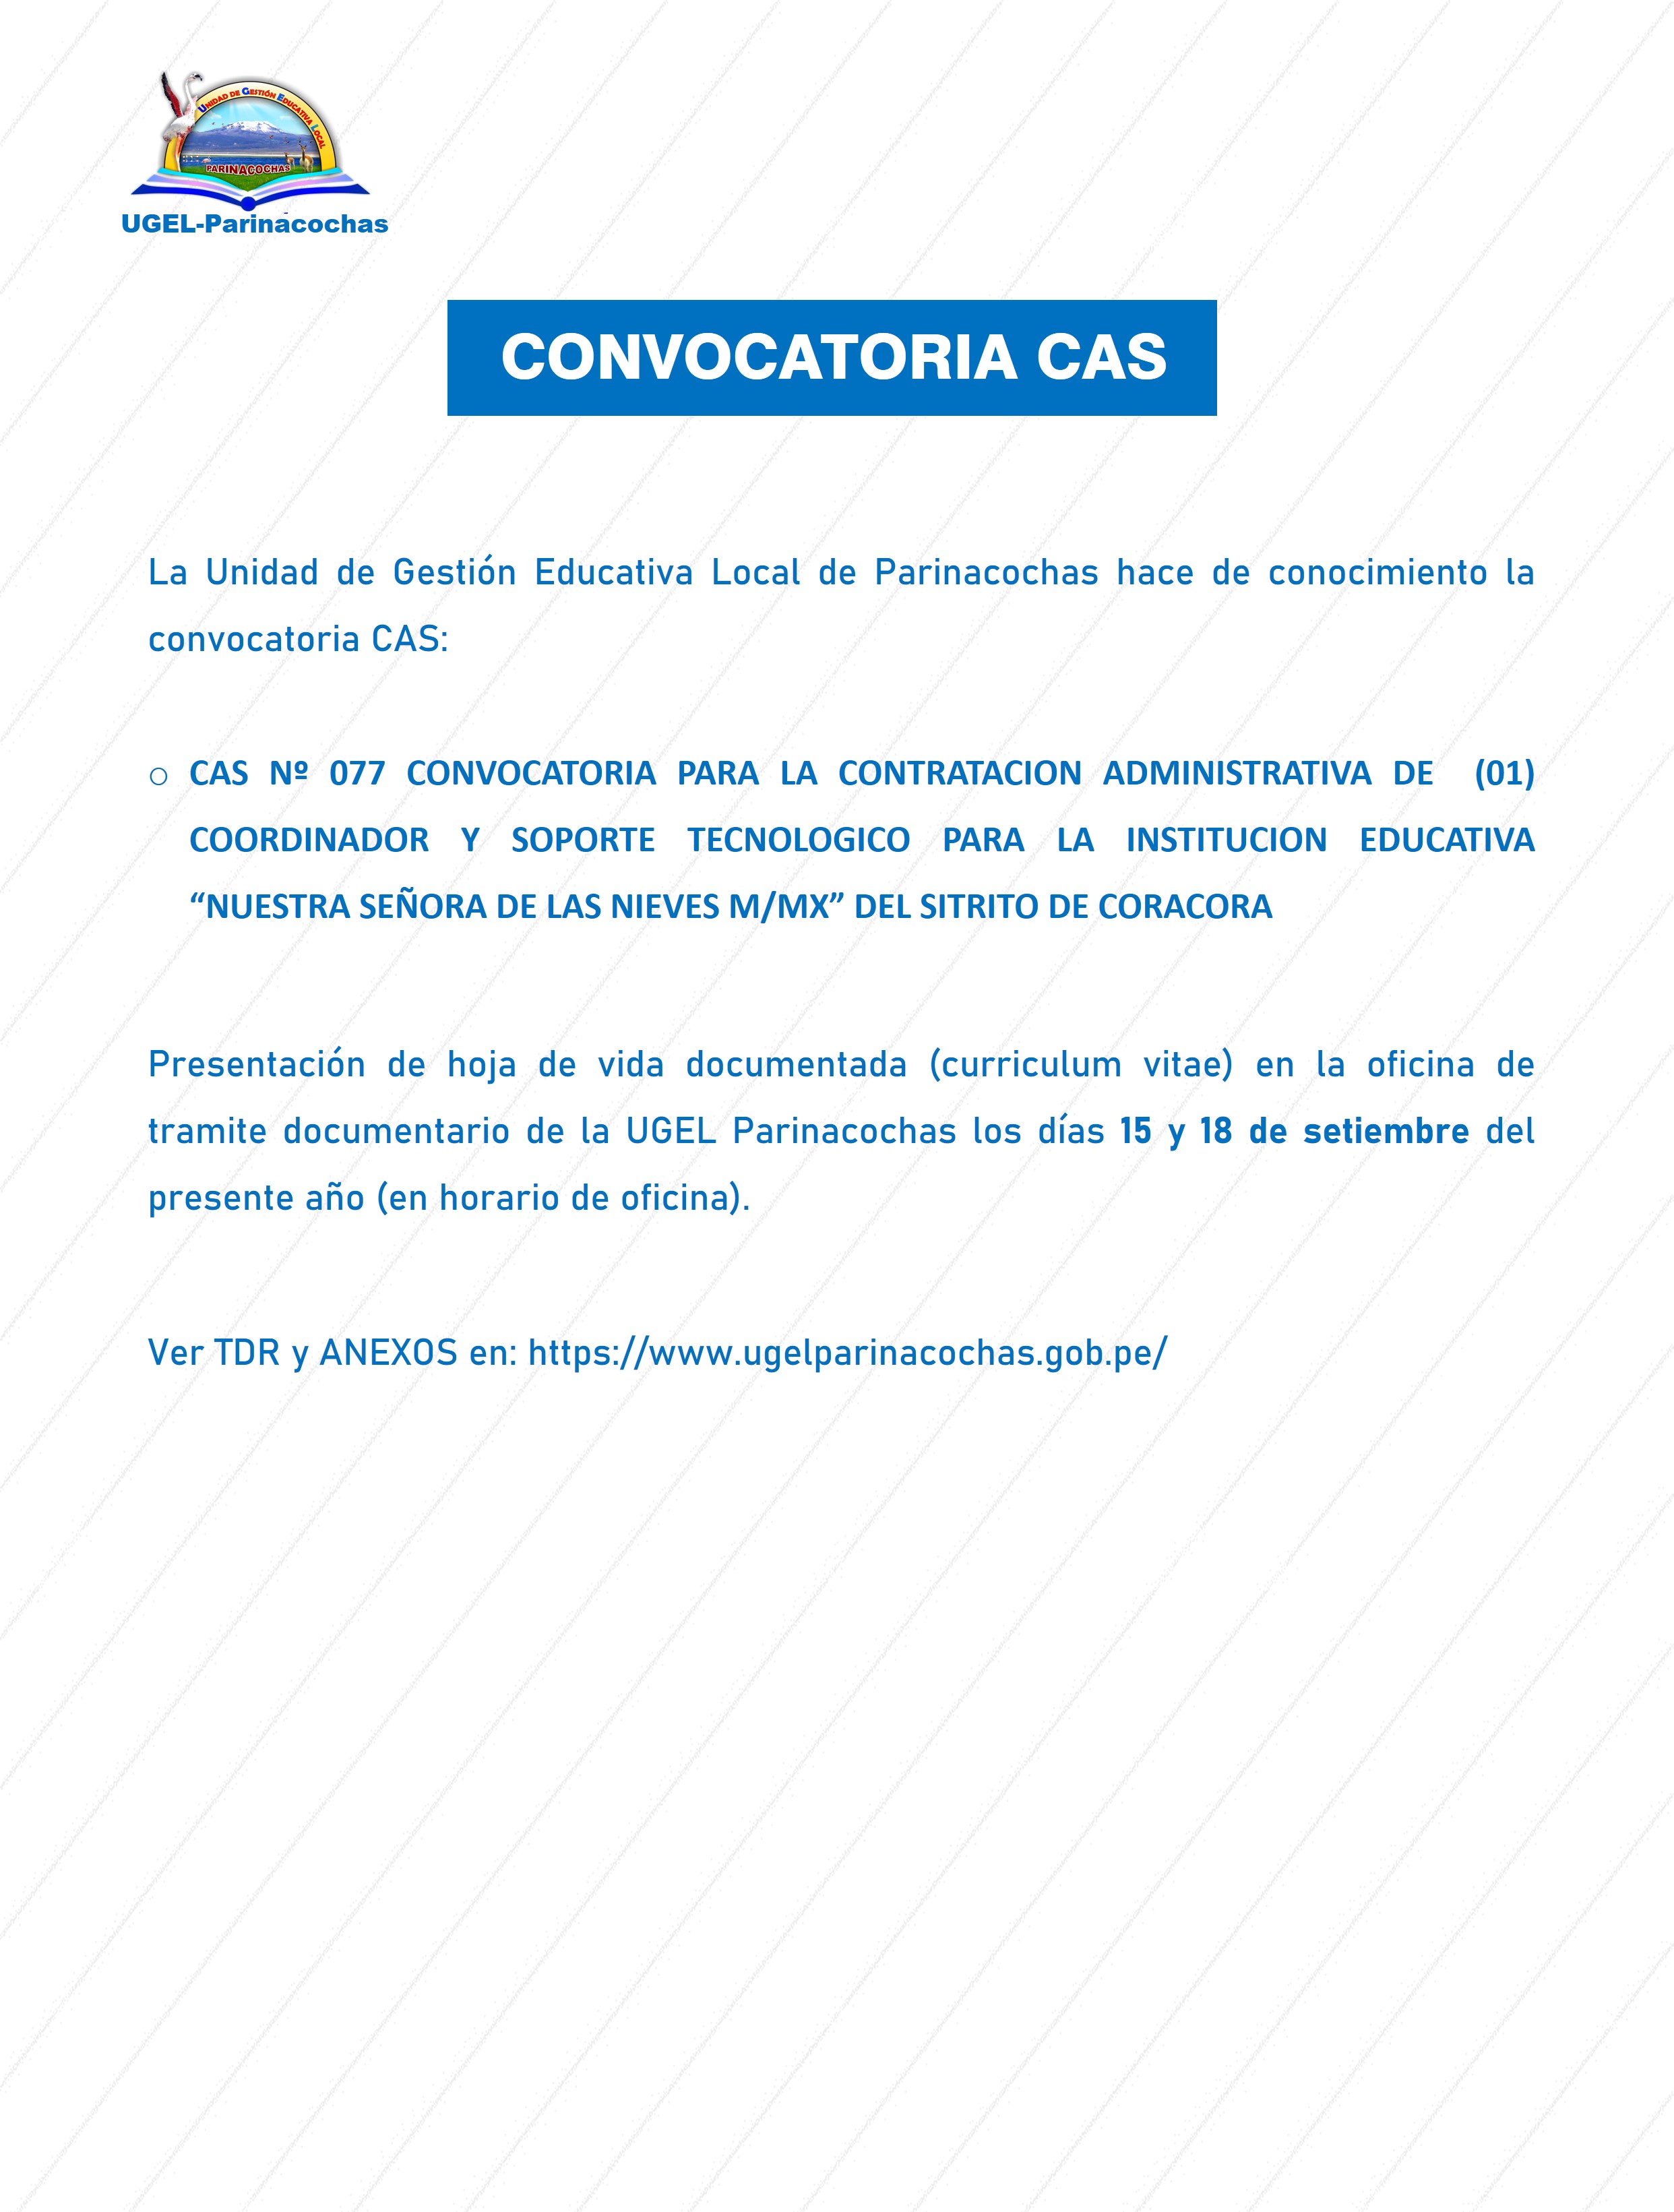 CAS Nº 077 CONVOCATORIA PARA LA CONTRATACION ADMINISTRATIVA DE  (01) COORDINADOR Y SOPORTE TECNOLOGICO PARA LA INSTITUCION EDUCATIVA “NUESTRA SEÑORA DE LAS NIEVES M/MX” DEL SITRITO DE CORACORA